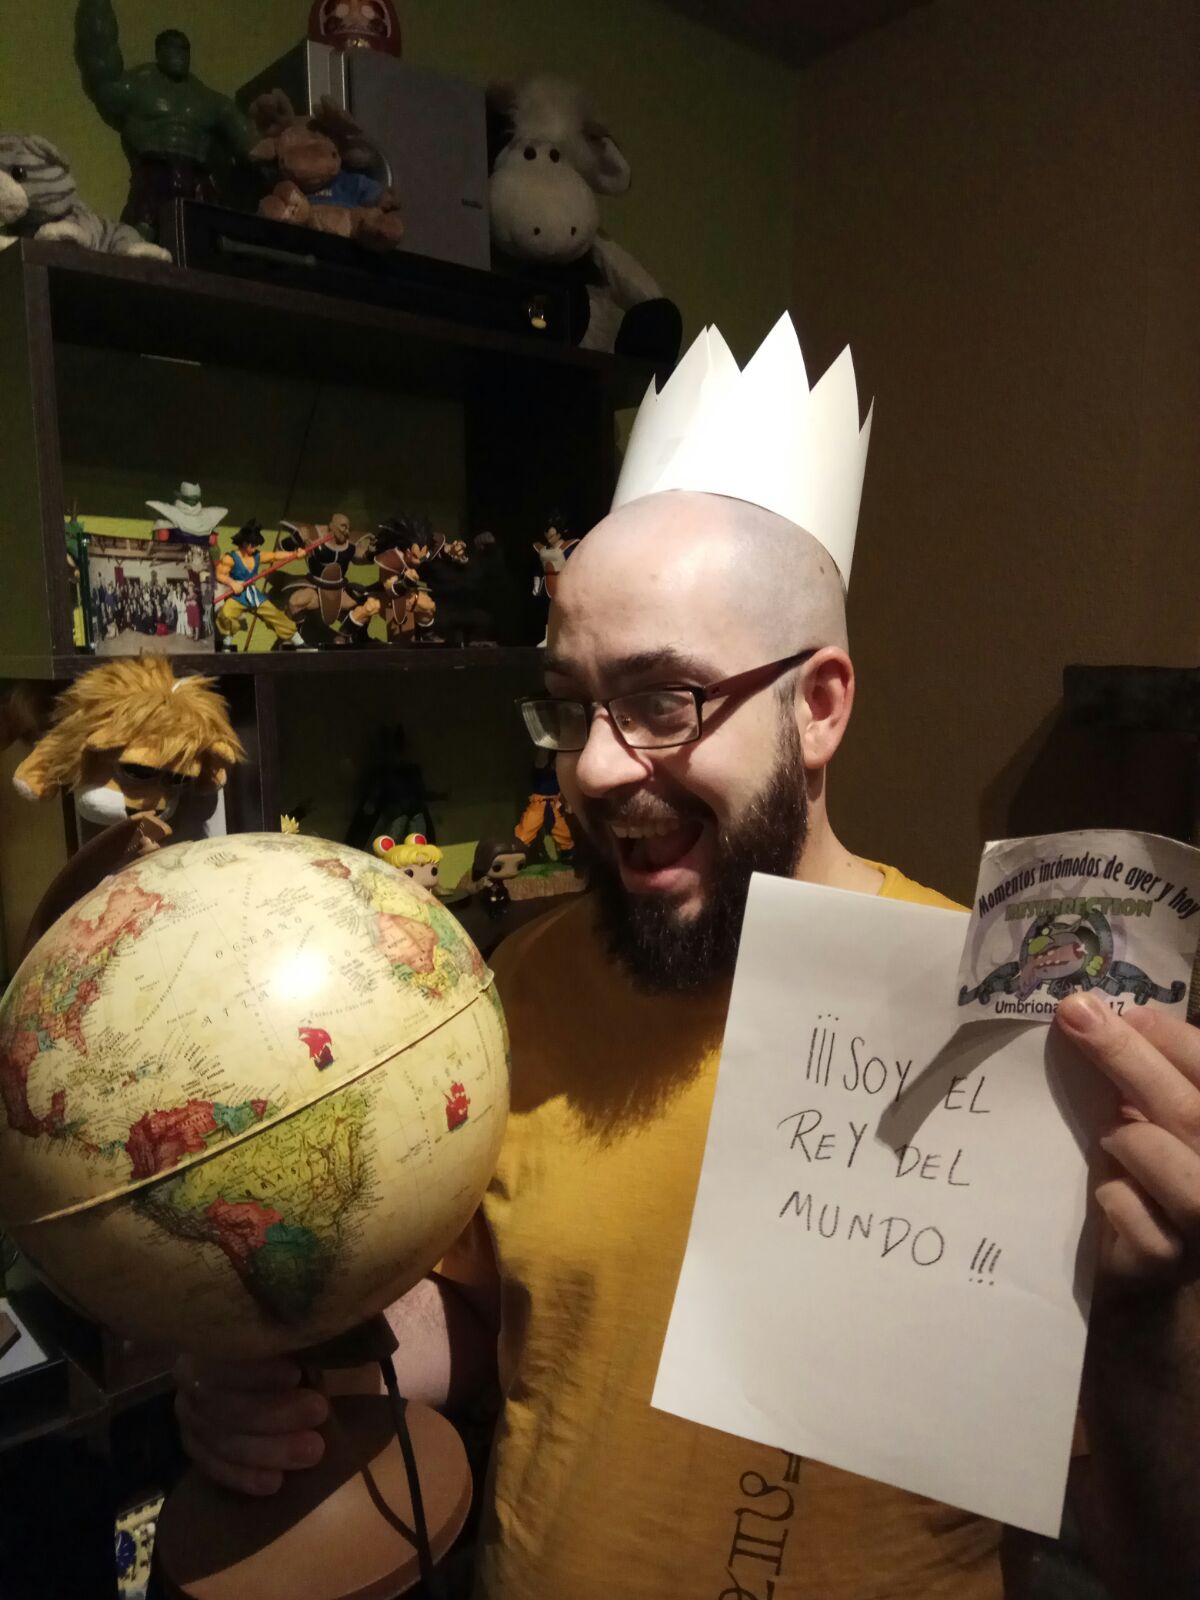 91. Con una bola del mundo en una mano, una corona en la cabeza y un cartel que diga ¡Soy el rey del mundo!